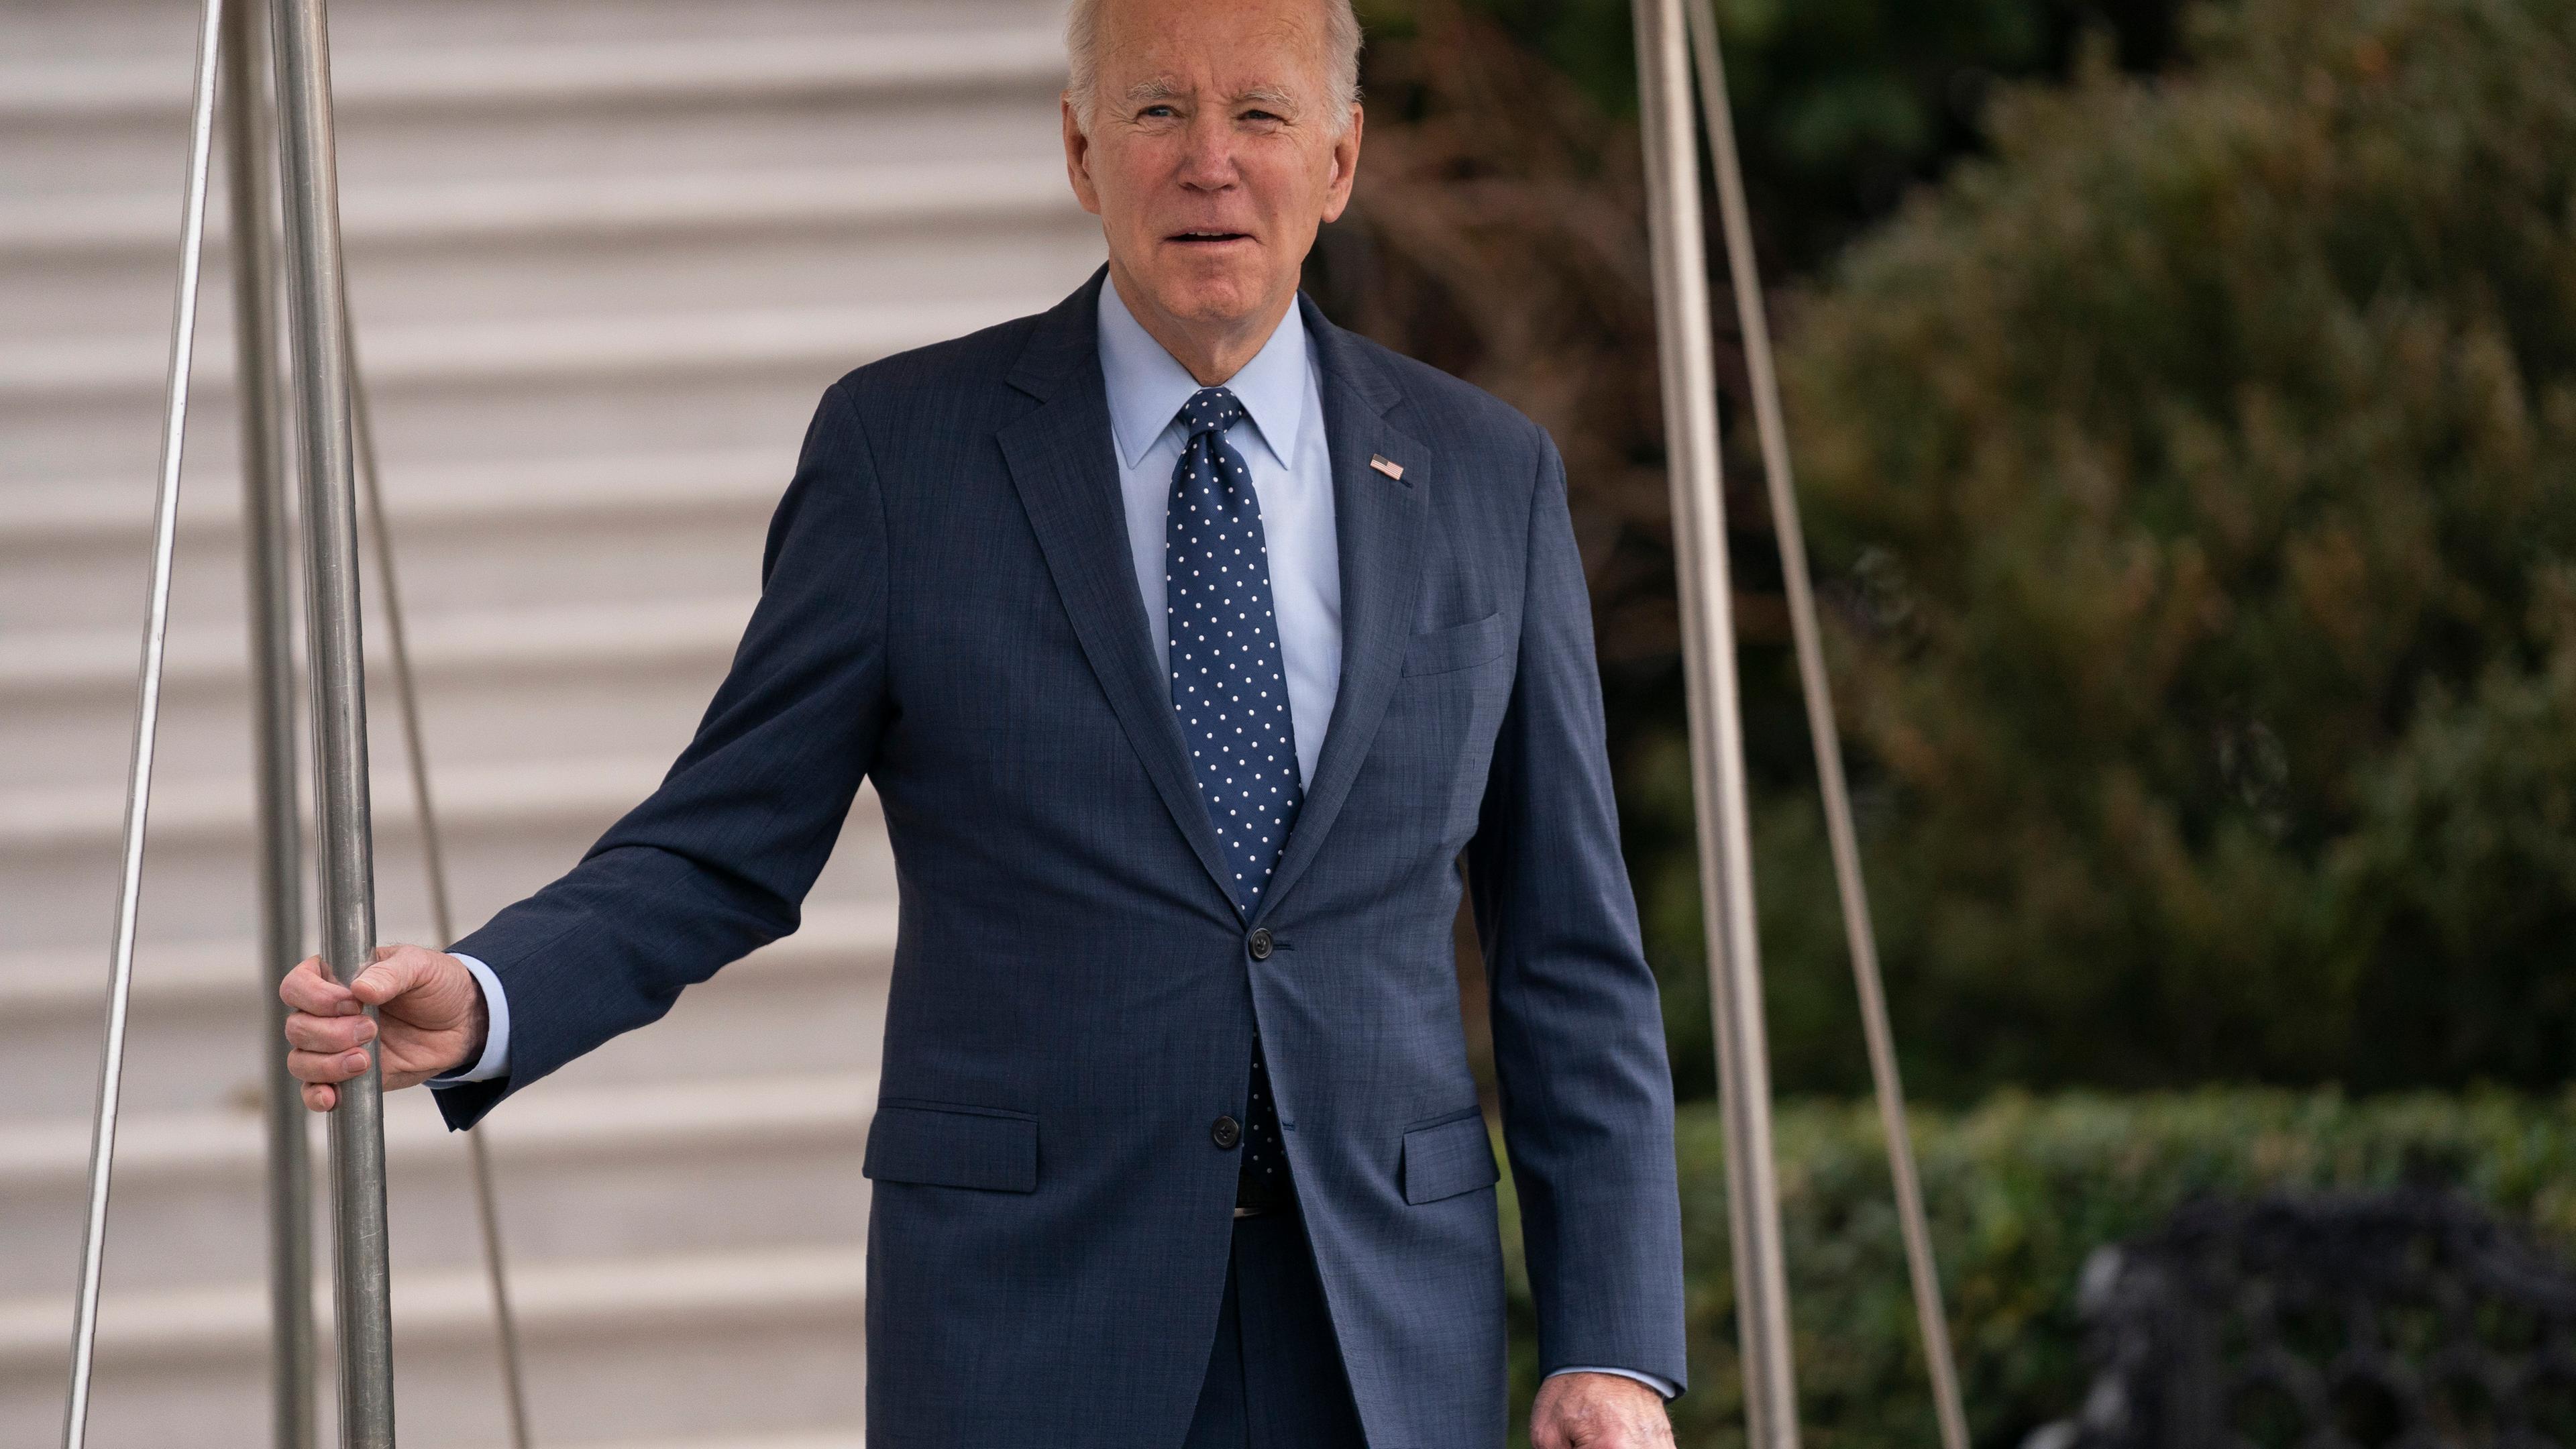 Joe Biden steht draußen, er trägt einen blauen Anzug